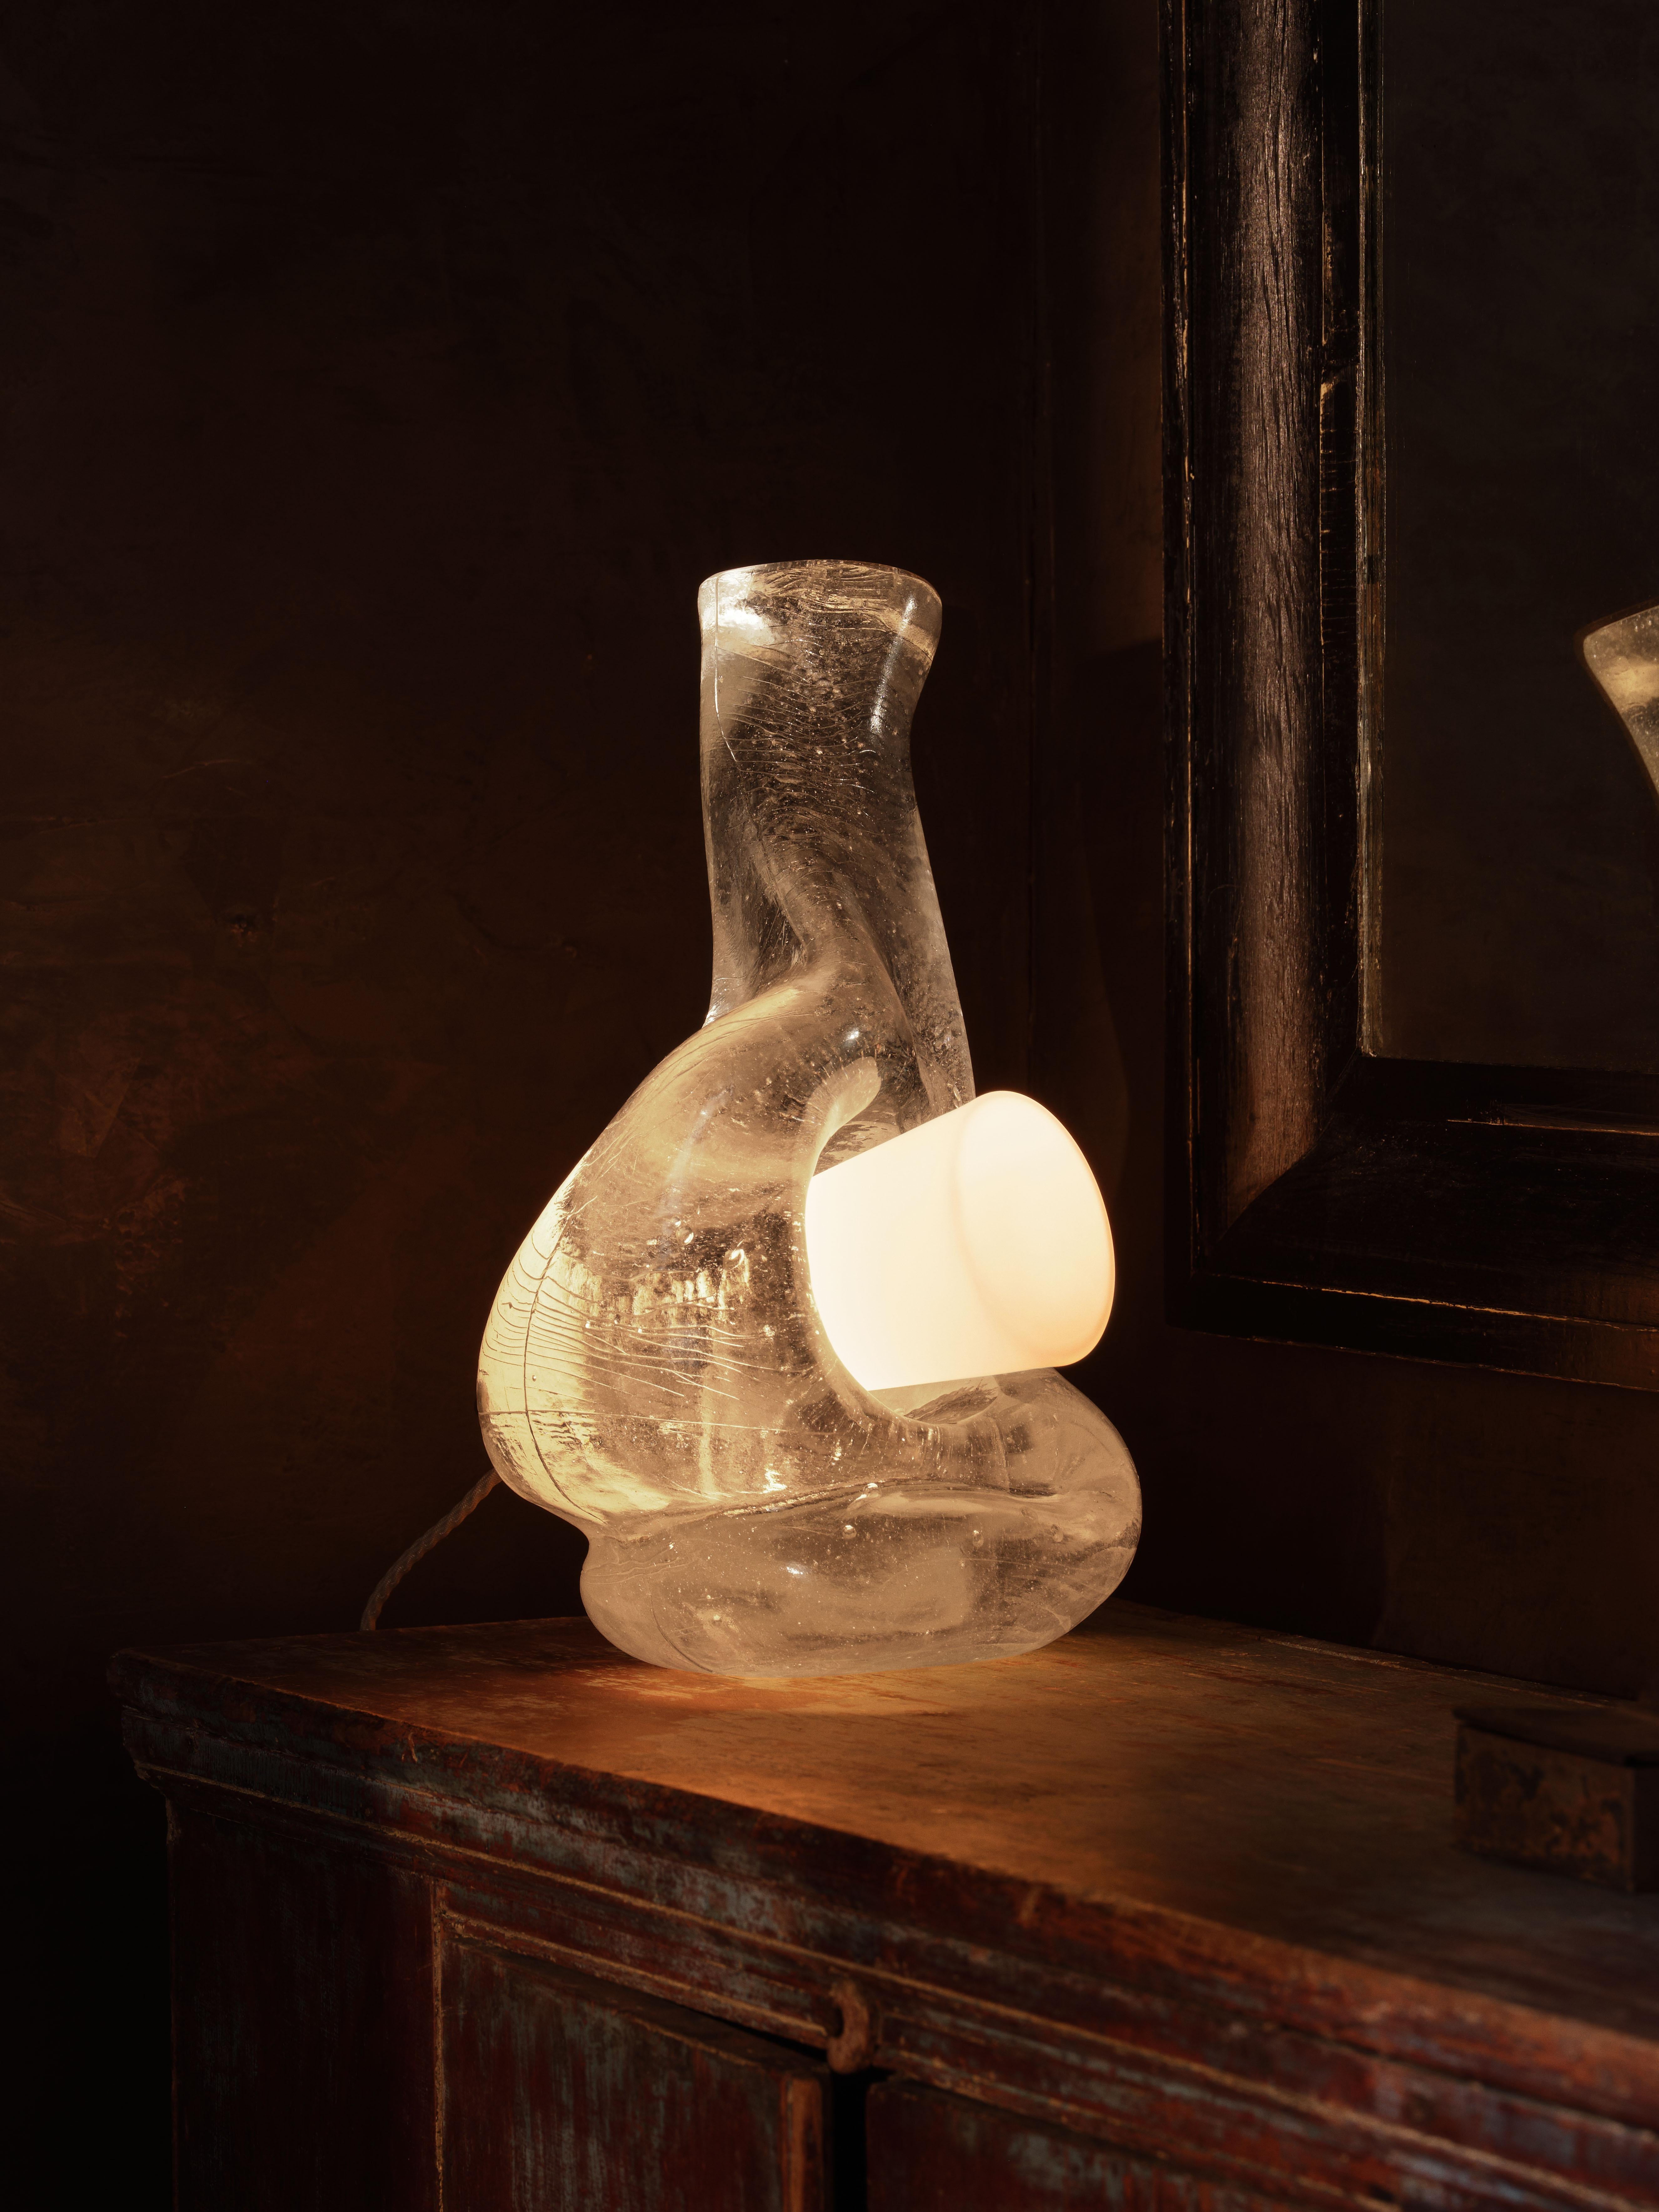 Kristallklares, geschmolzenes Glas wird in eine Graphitform gegossen, um den skulpturalen Körper der Leuchte zu formen, der von einem mundgeblasenen weißen Glaskegel durchbrochen und an einer Bronzearmatur befestigt wird.

MATERIALIEN: Gussglas,